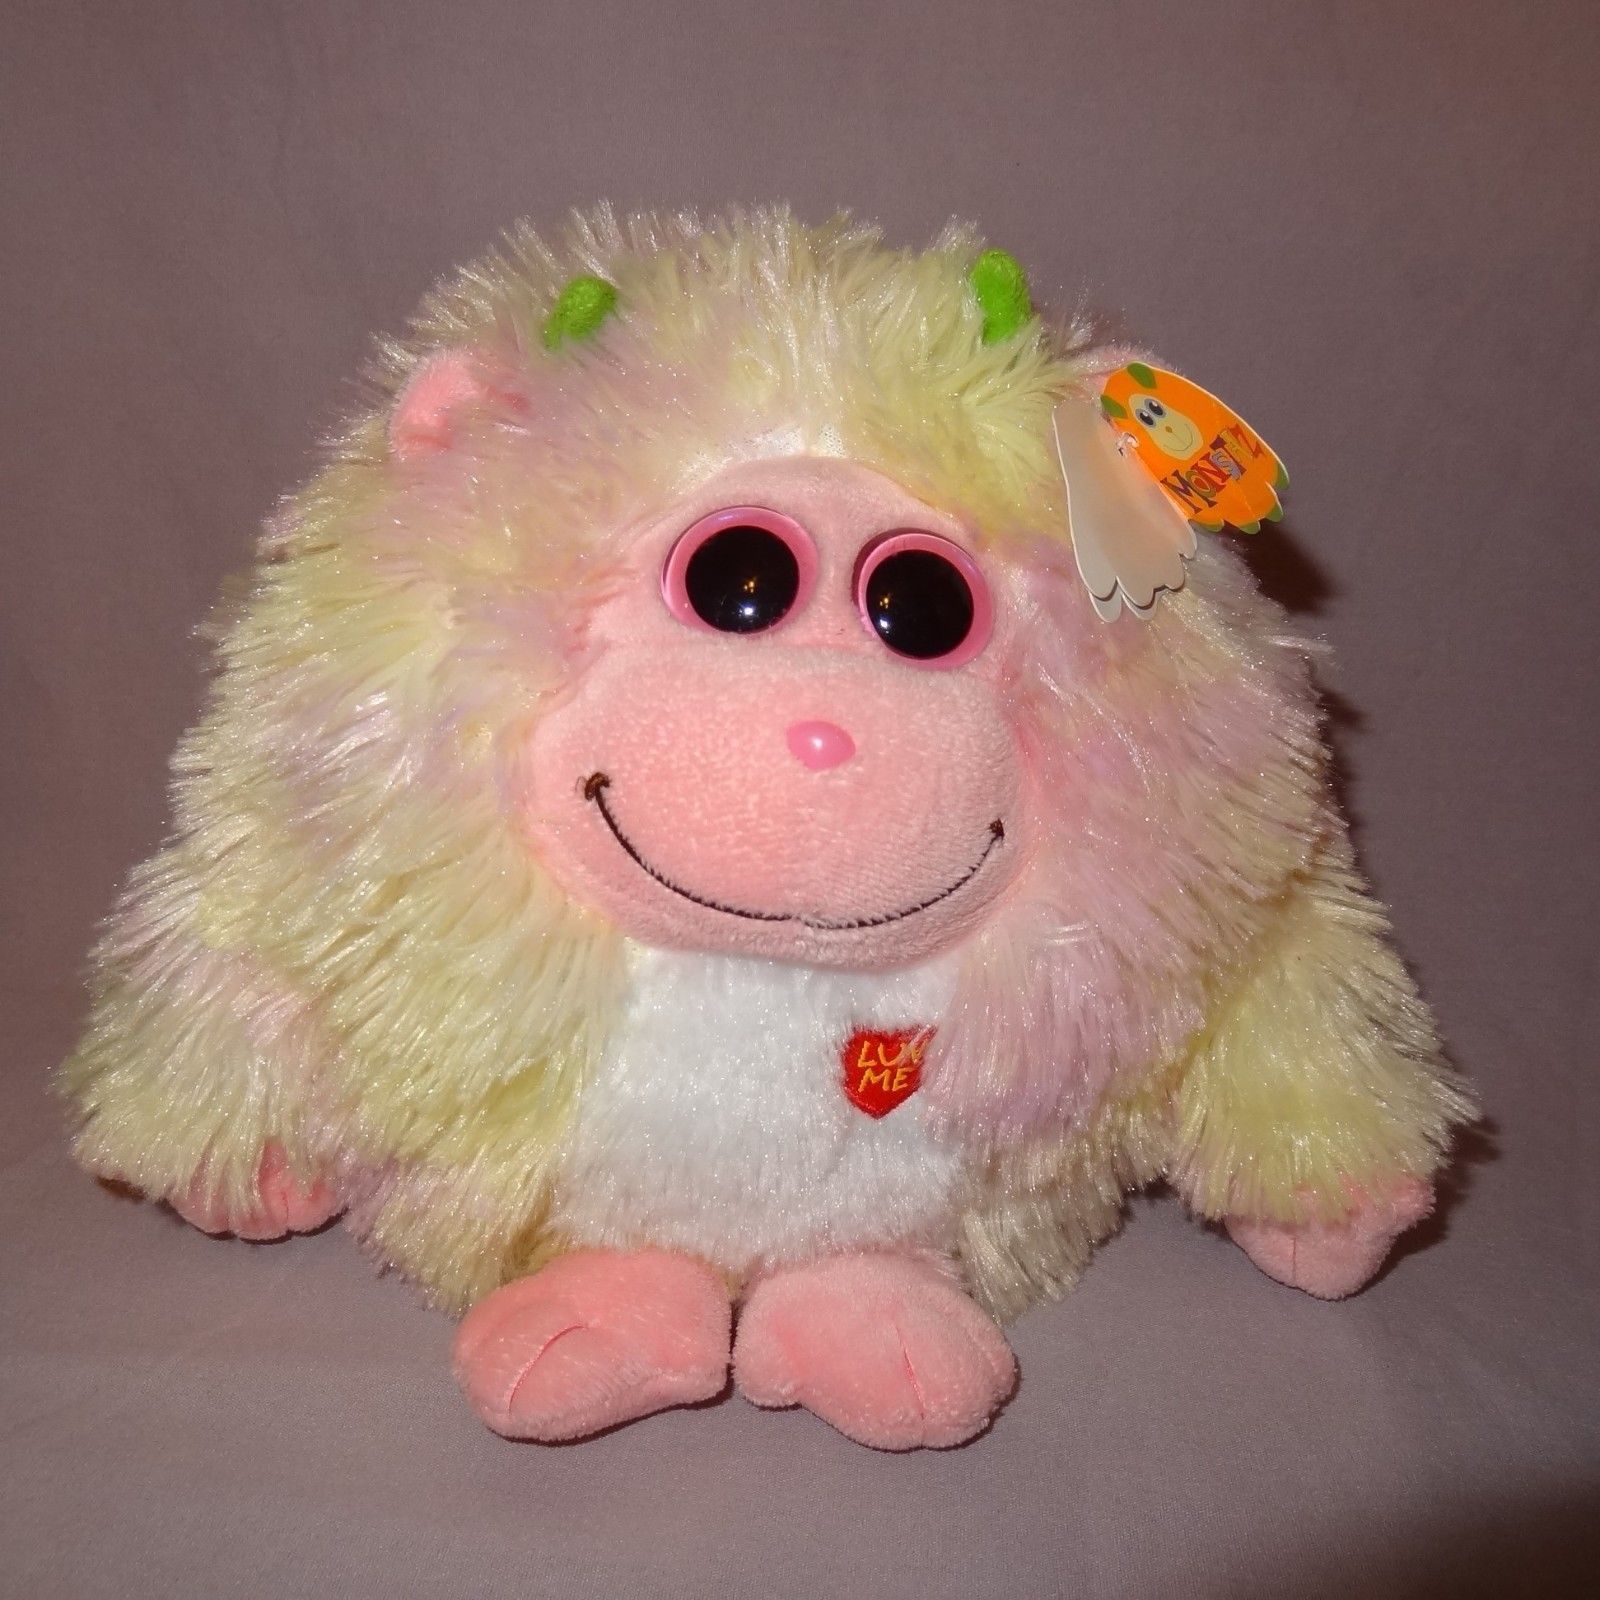 Lola Baby Monstaz Ty Plush Stuffed Animal Sounds Pink Yellow Big Eyes 2012  7" - $14.99